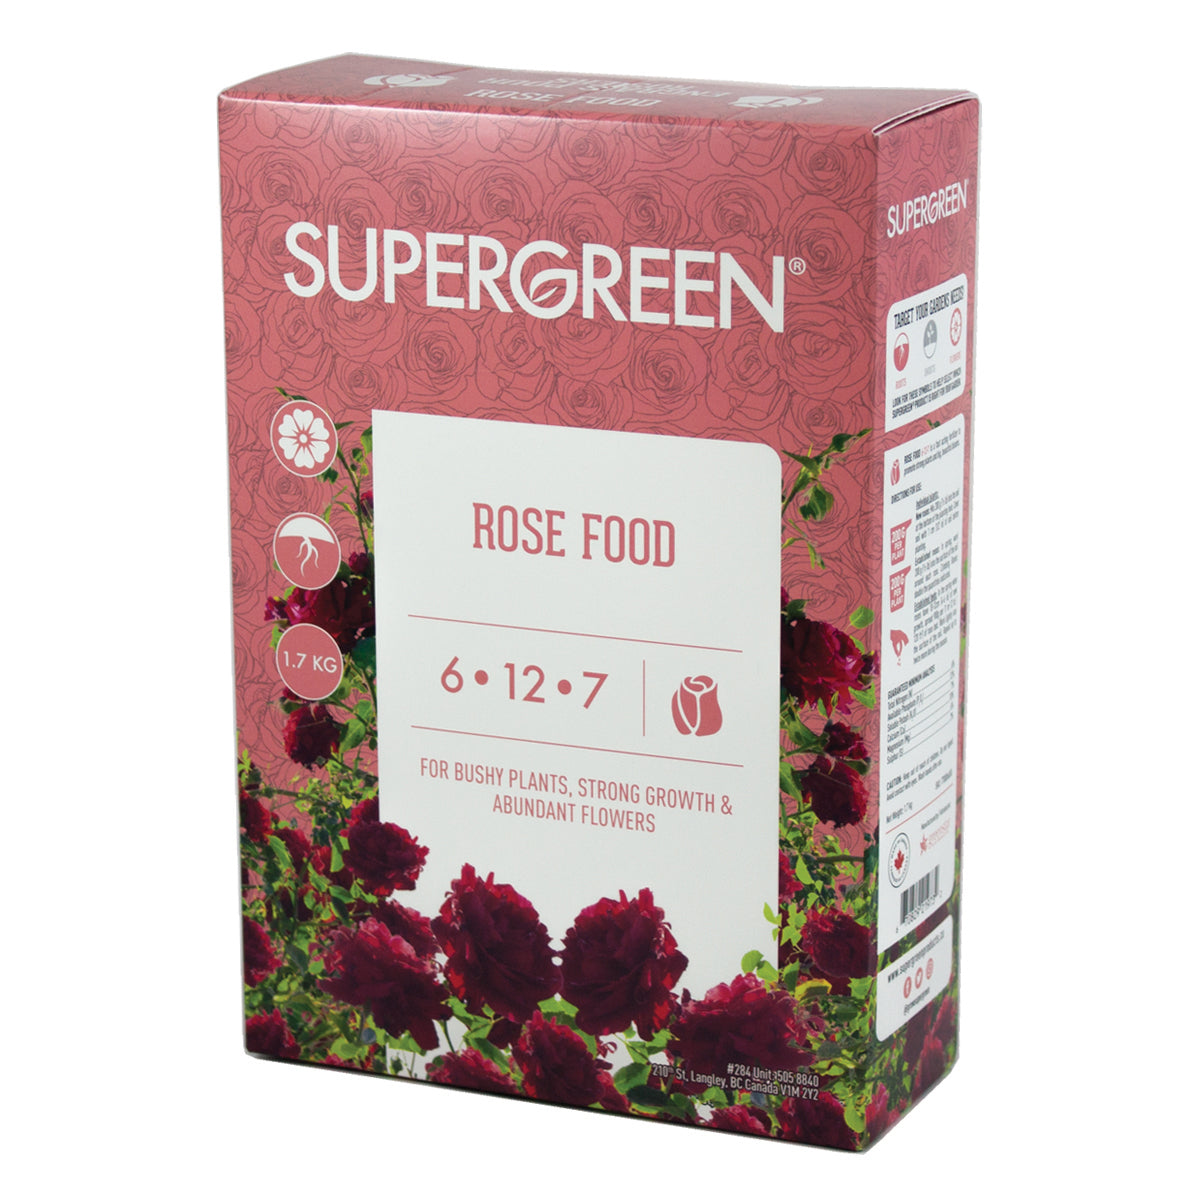 Supergreen Rose Food 6-12-7 1.7kg